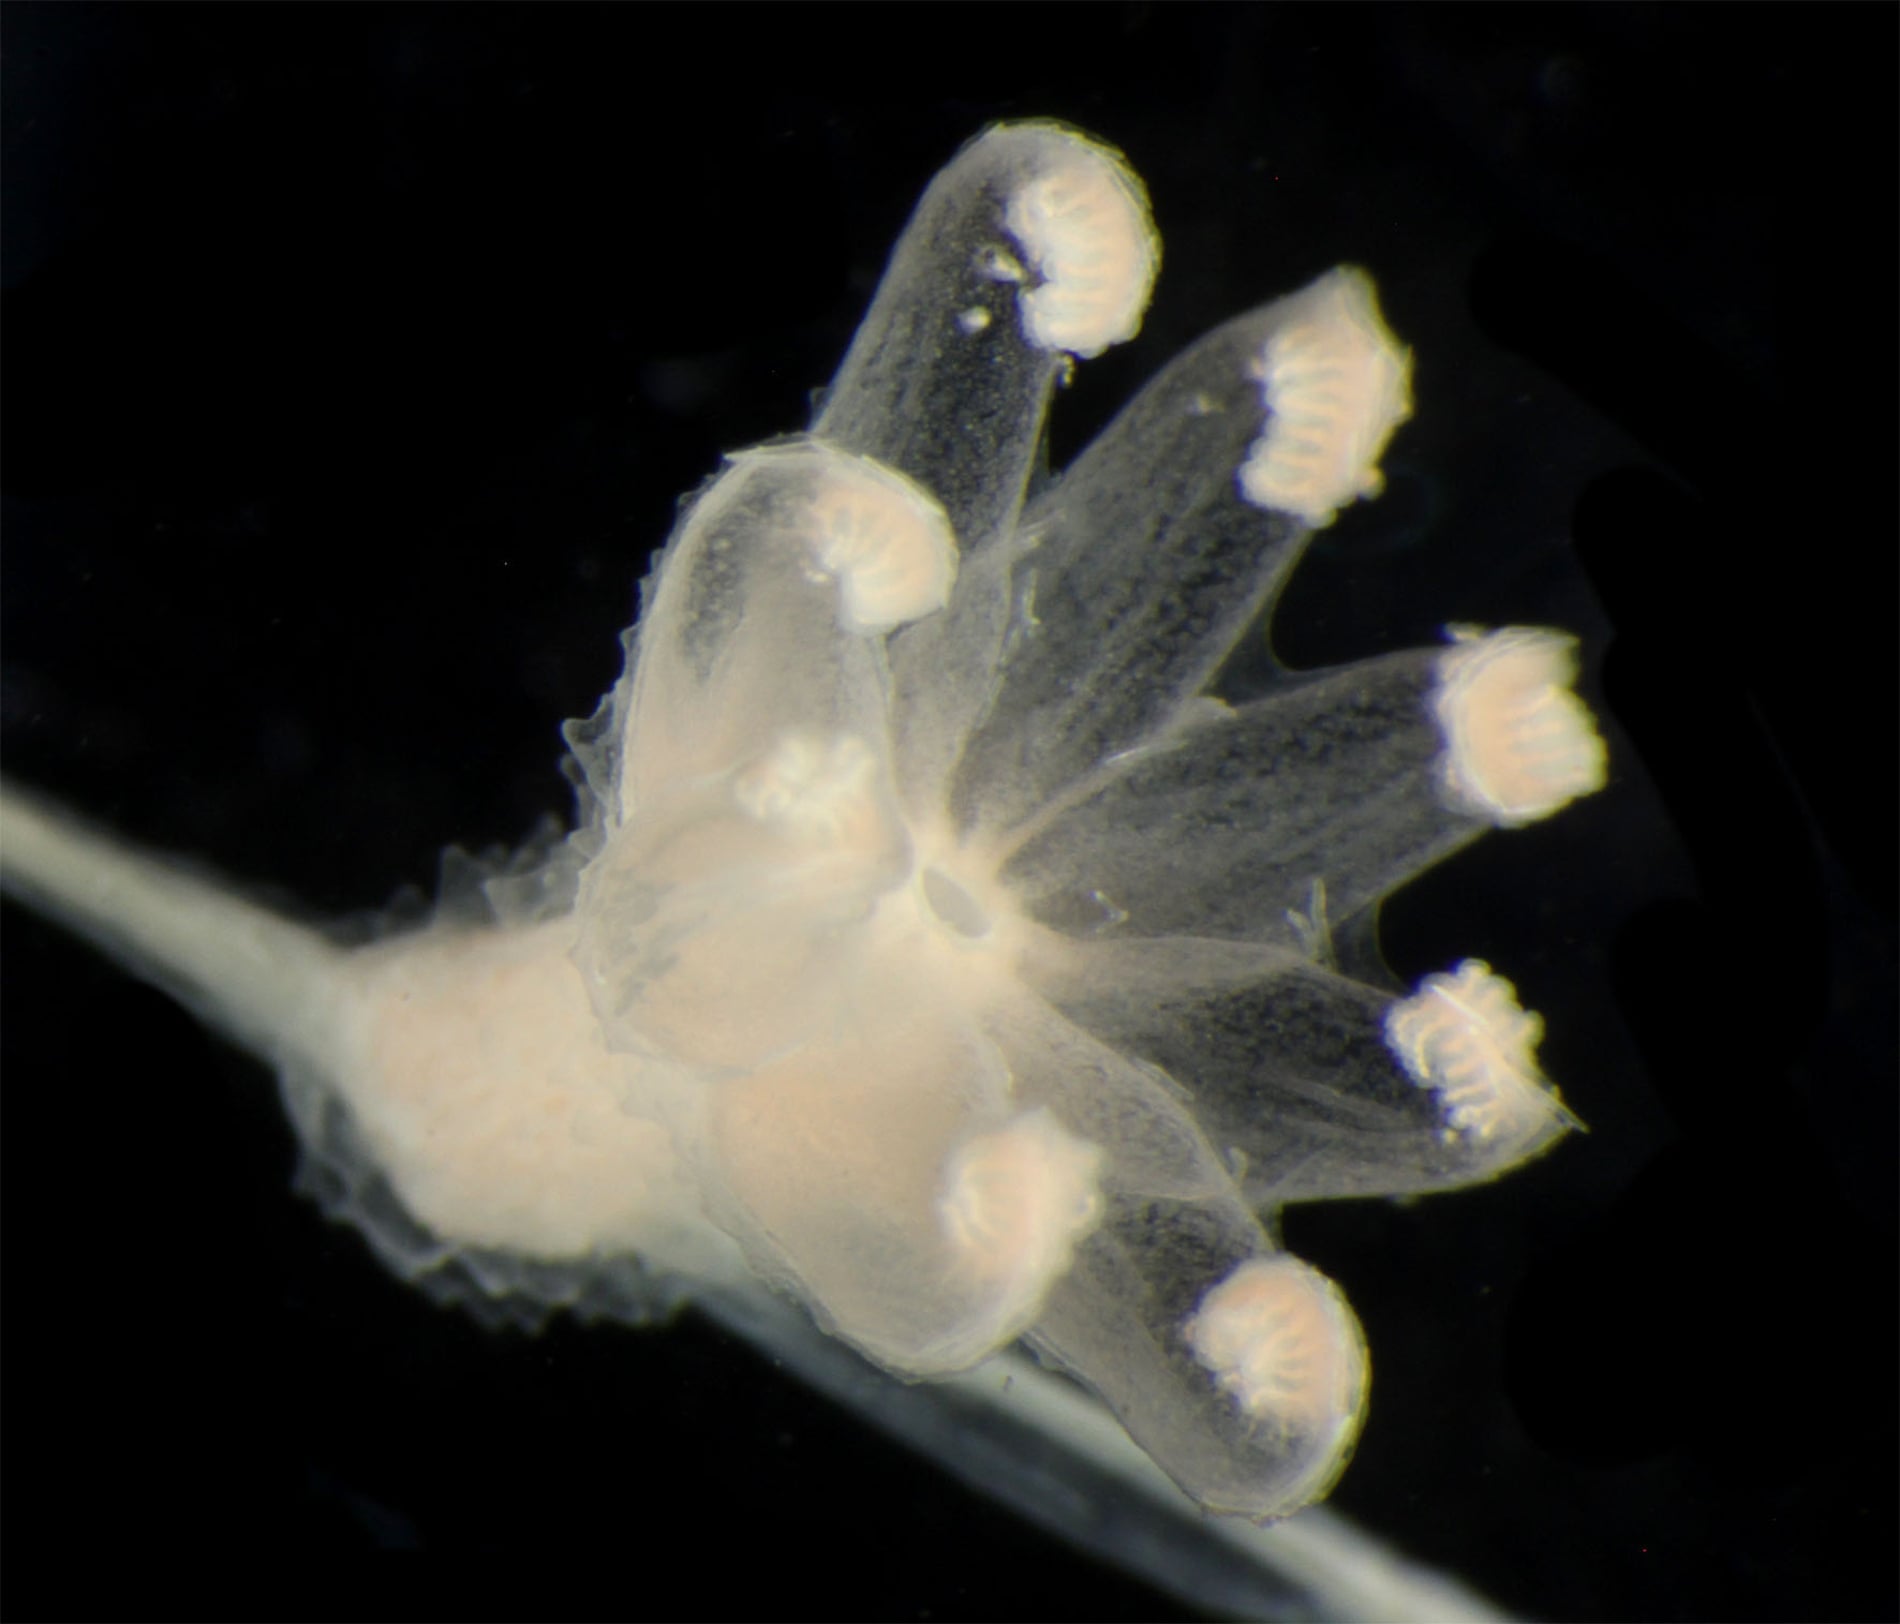 An open polyp of *Chrysogorgia* - a type of soft coral